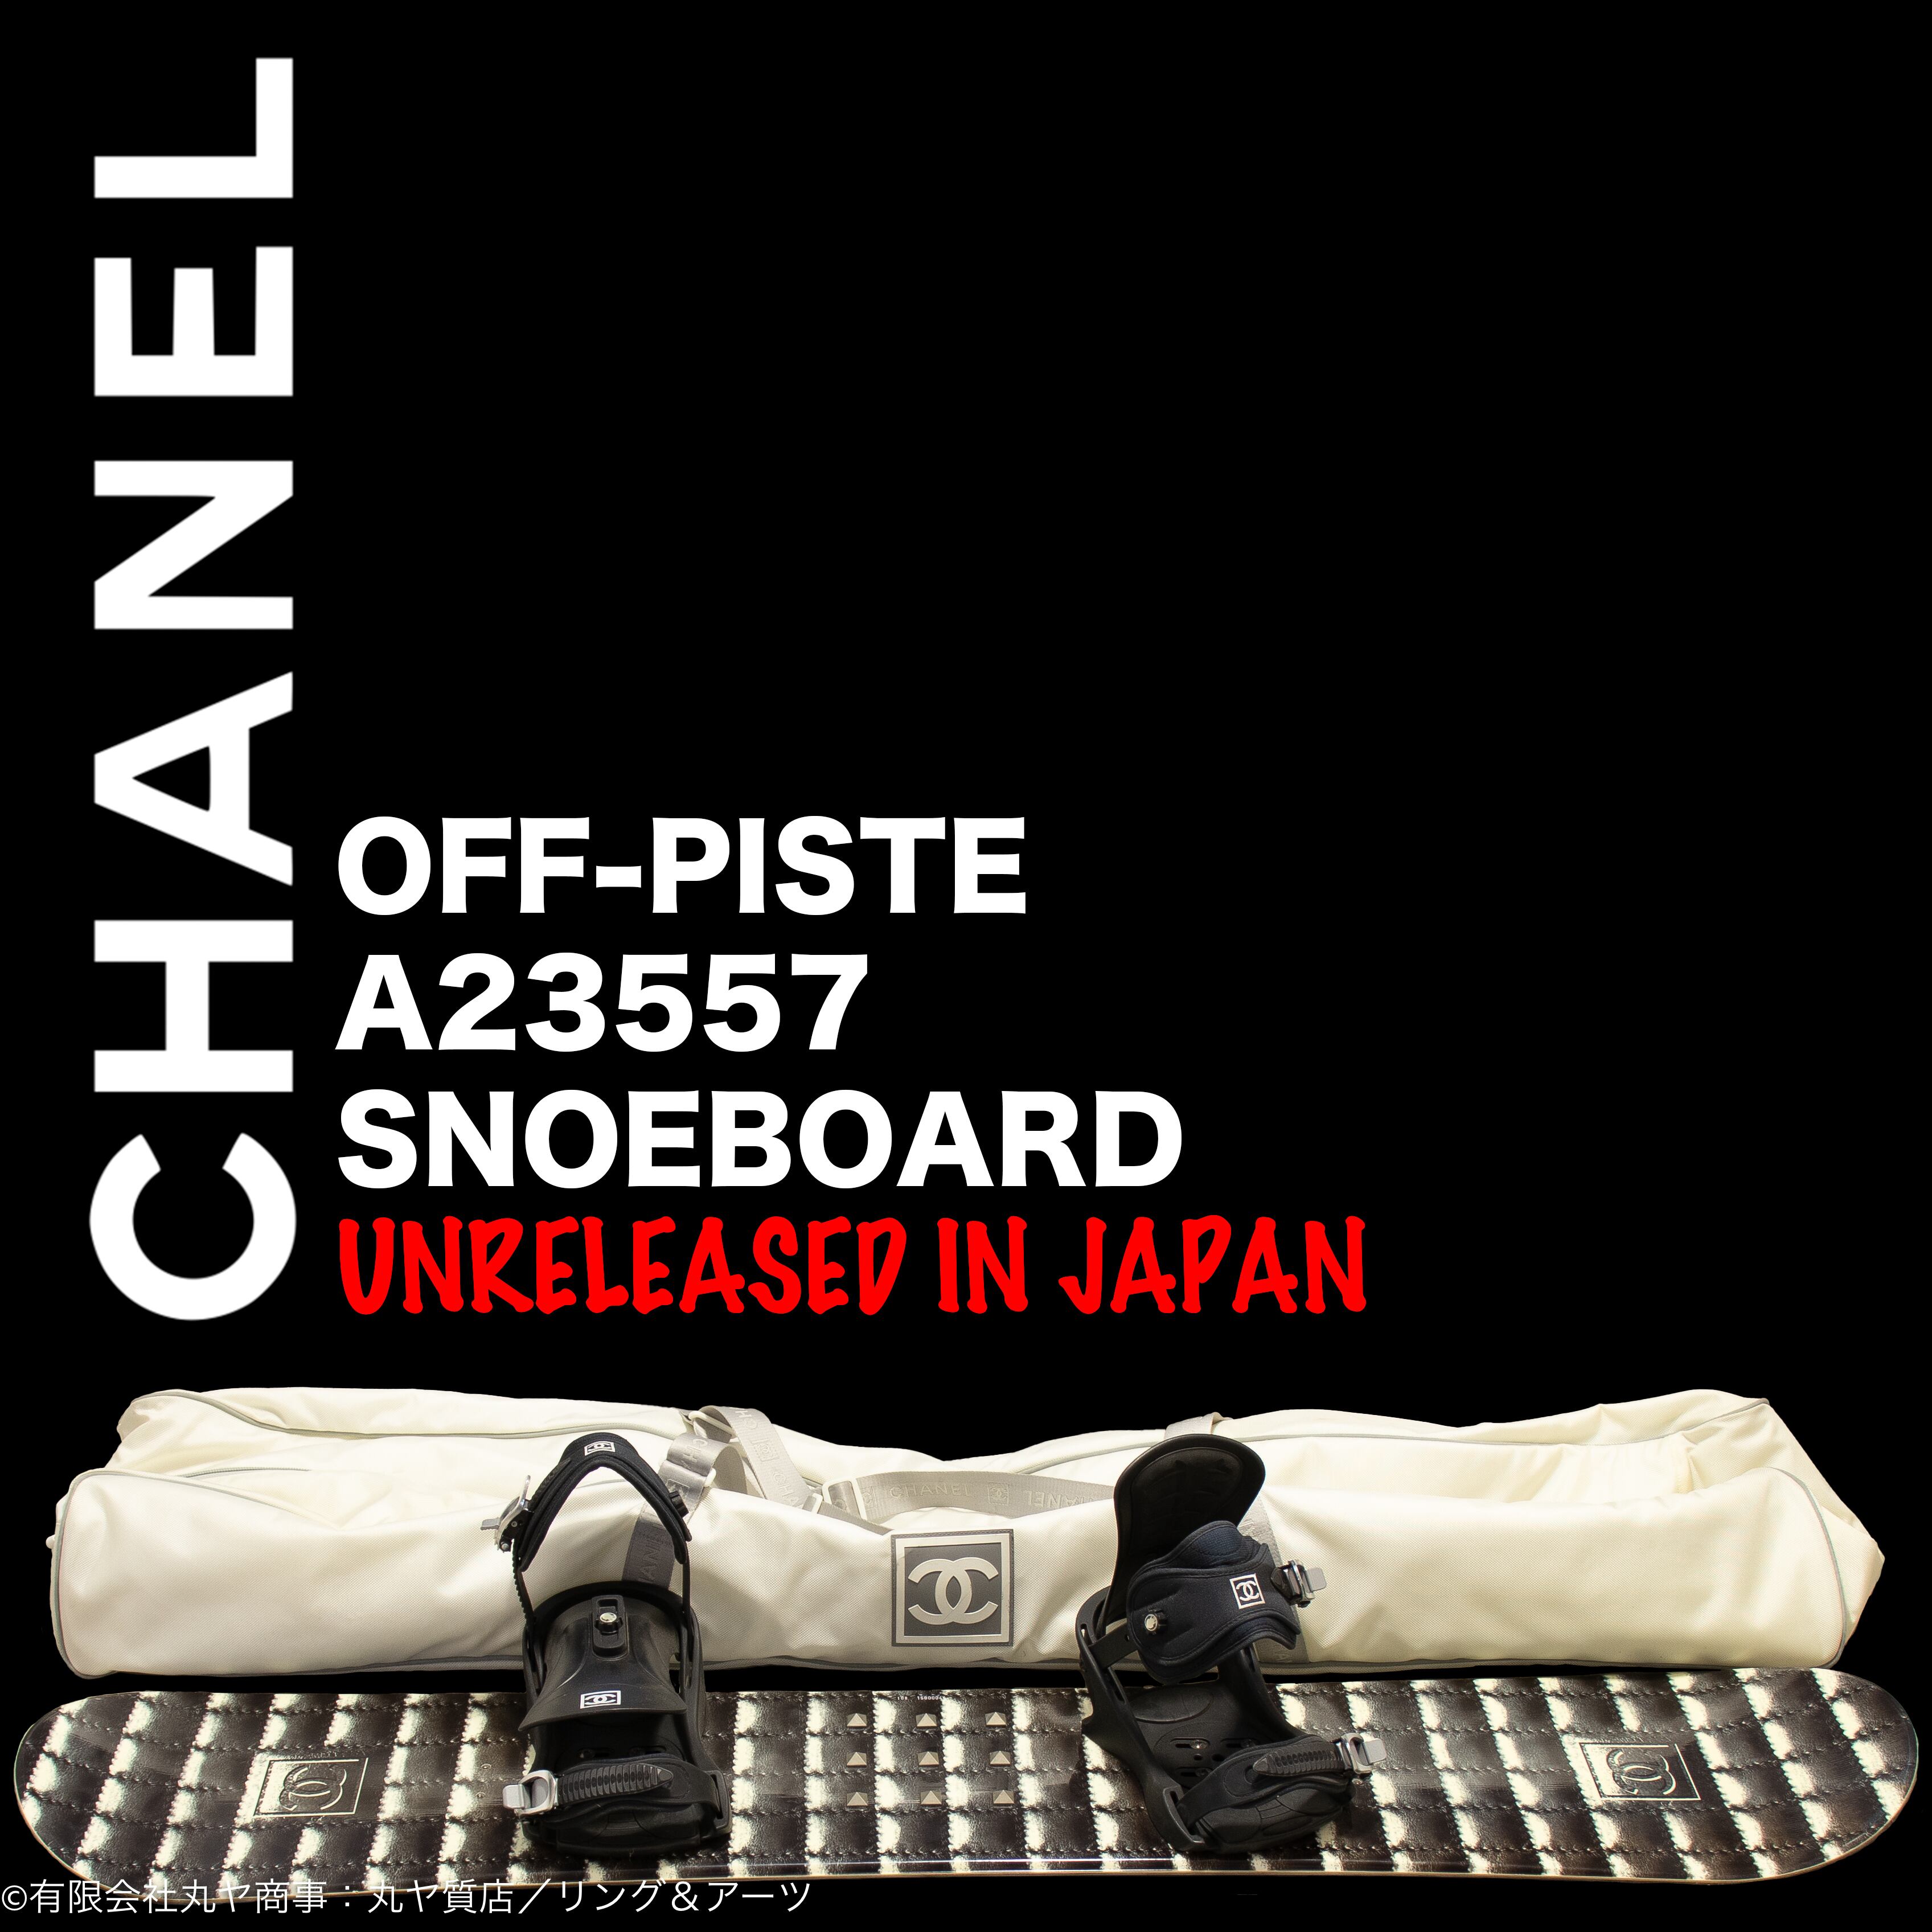 シャネル:スノーボード/オフピステ/A23557型/CHANEL OFF-PISTE ...